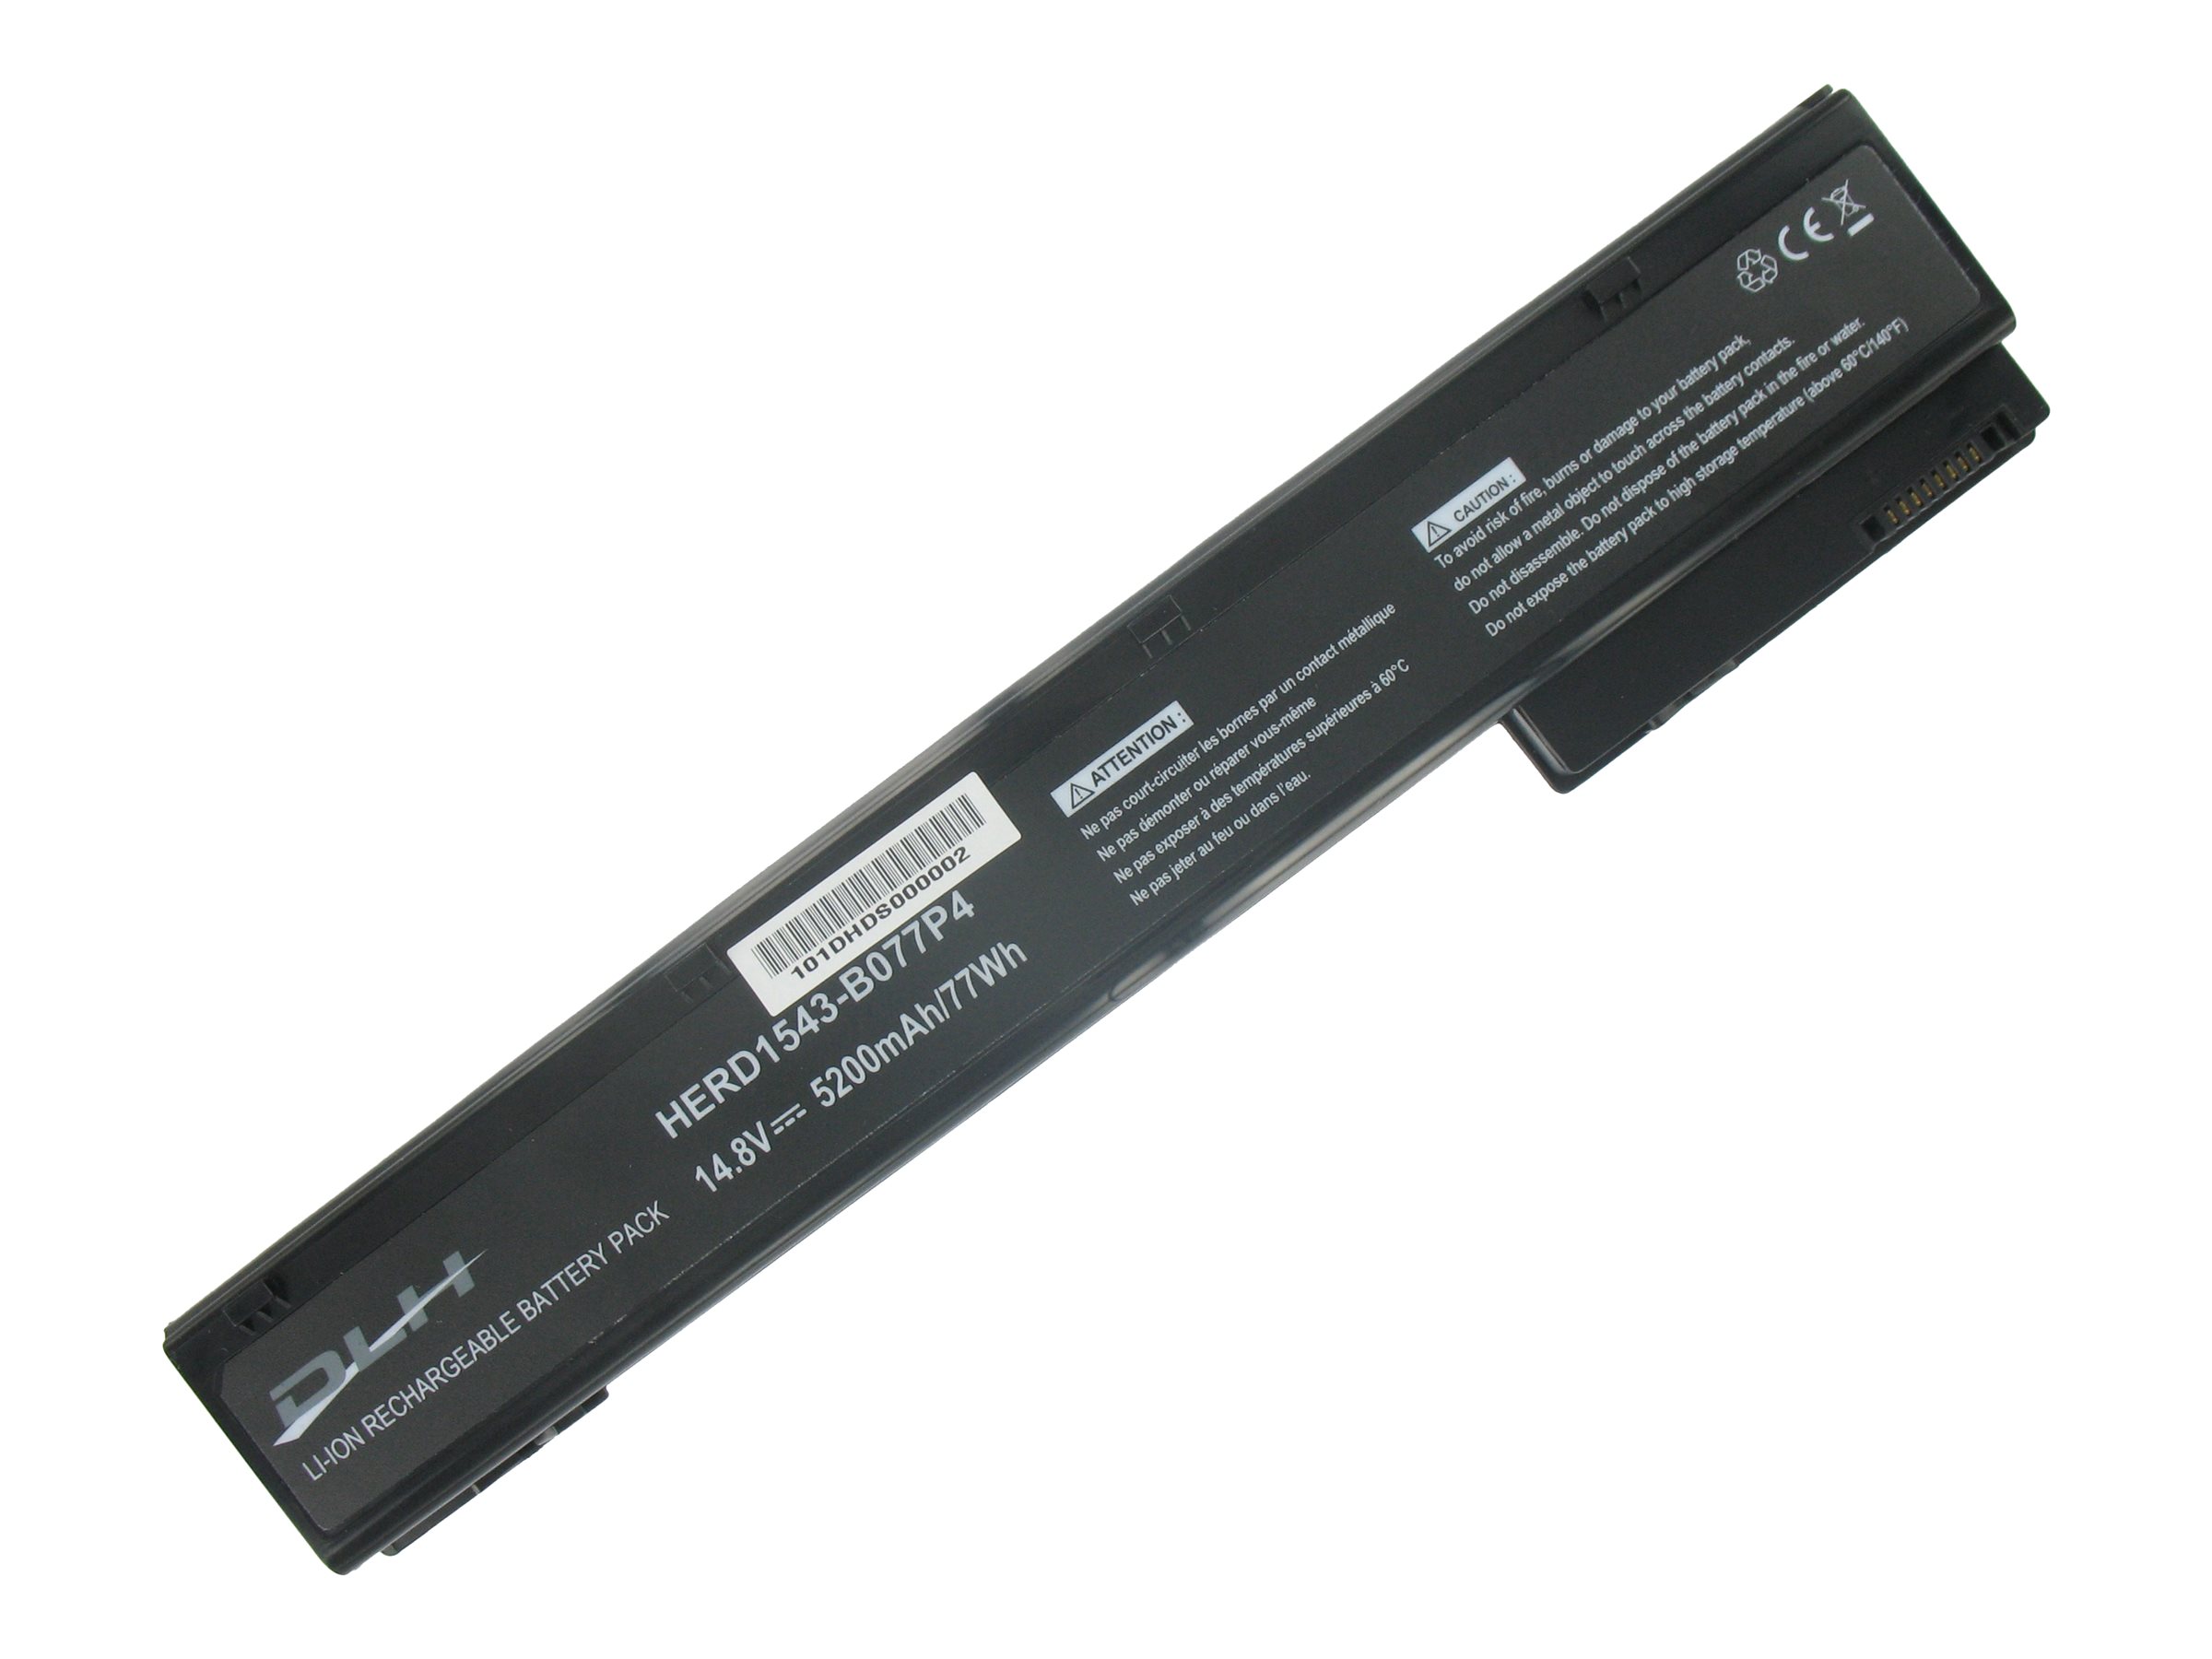 DLH - Batterie de portable (standard) - Lithium Ion - 8 cellules - 5200 mAh - noir - HERD1543-B077P4 - Batteries spécifiques